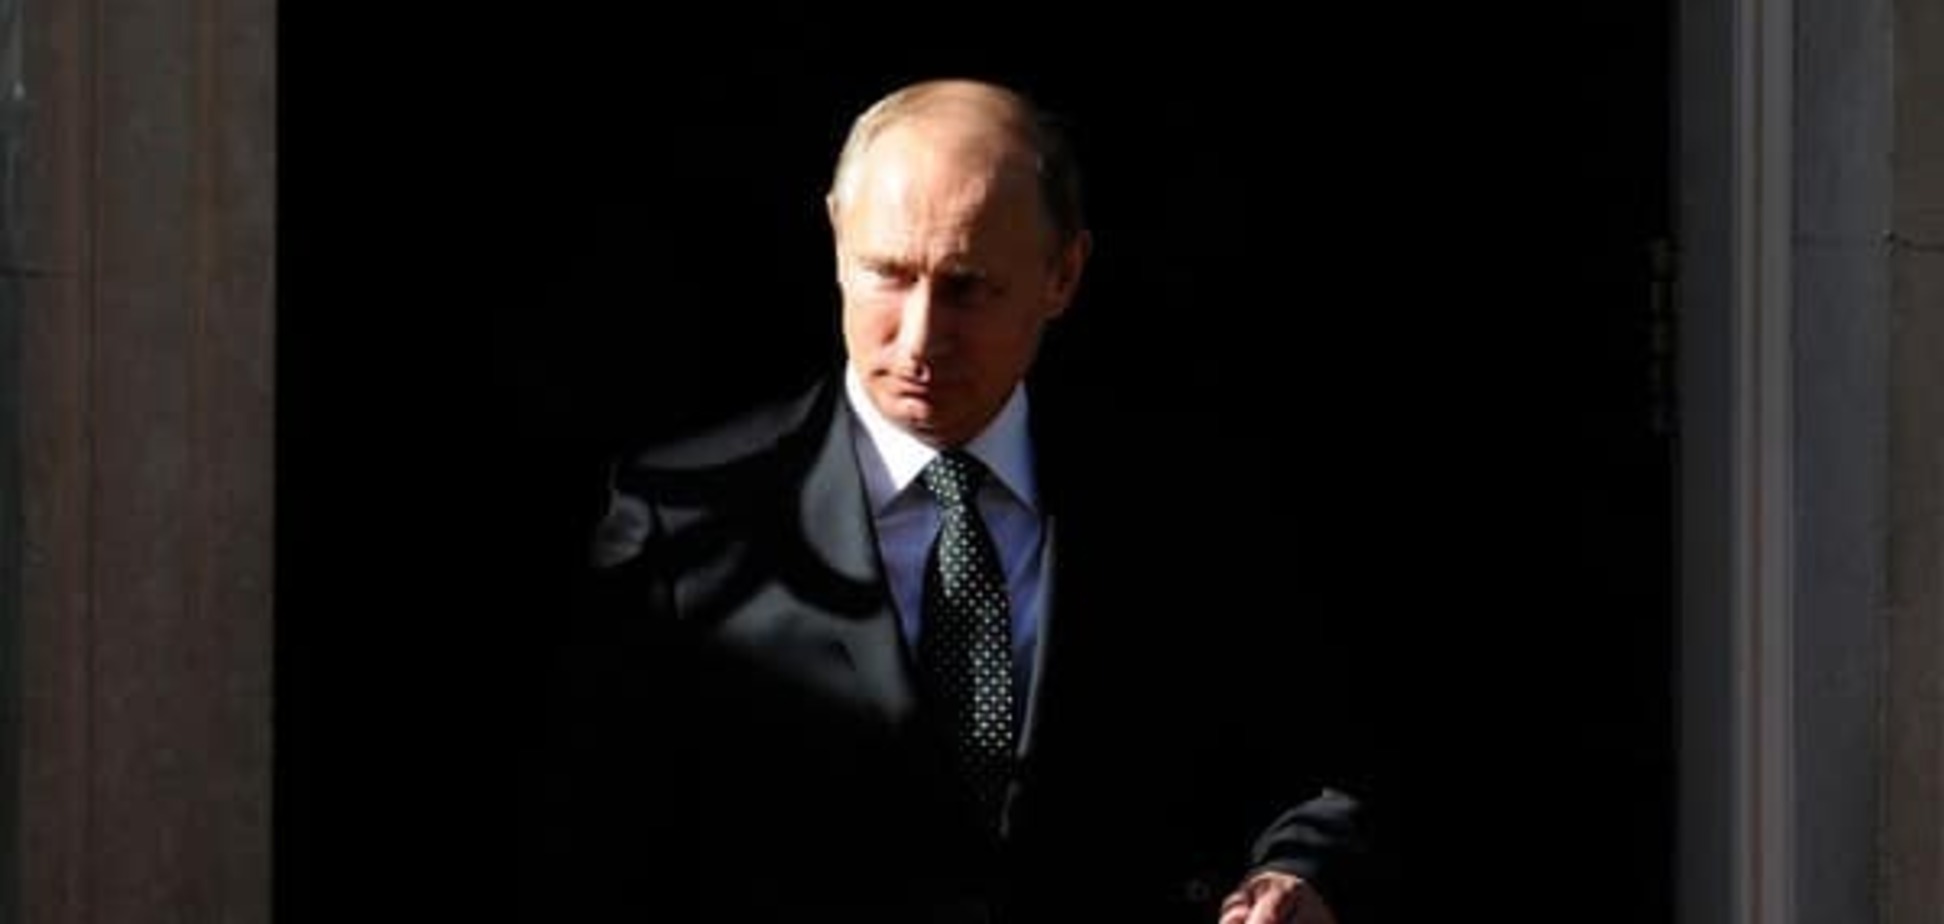 Сотник: скоро мы станем свидетелями финала биографии под названием 'Владимир Путин'